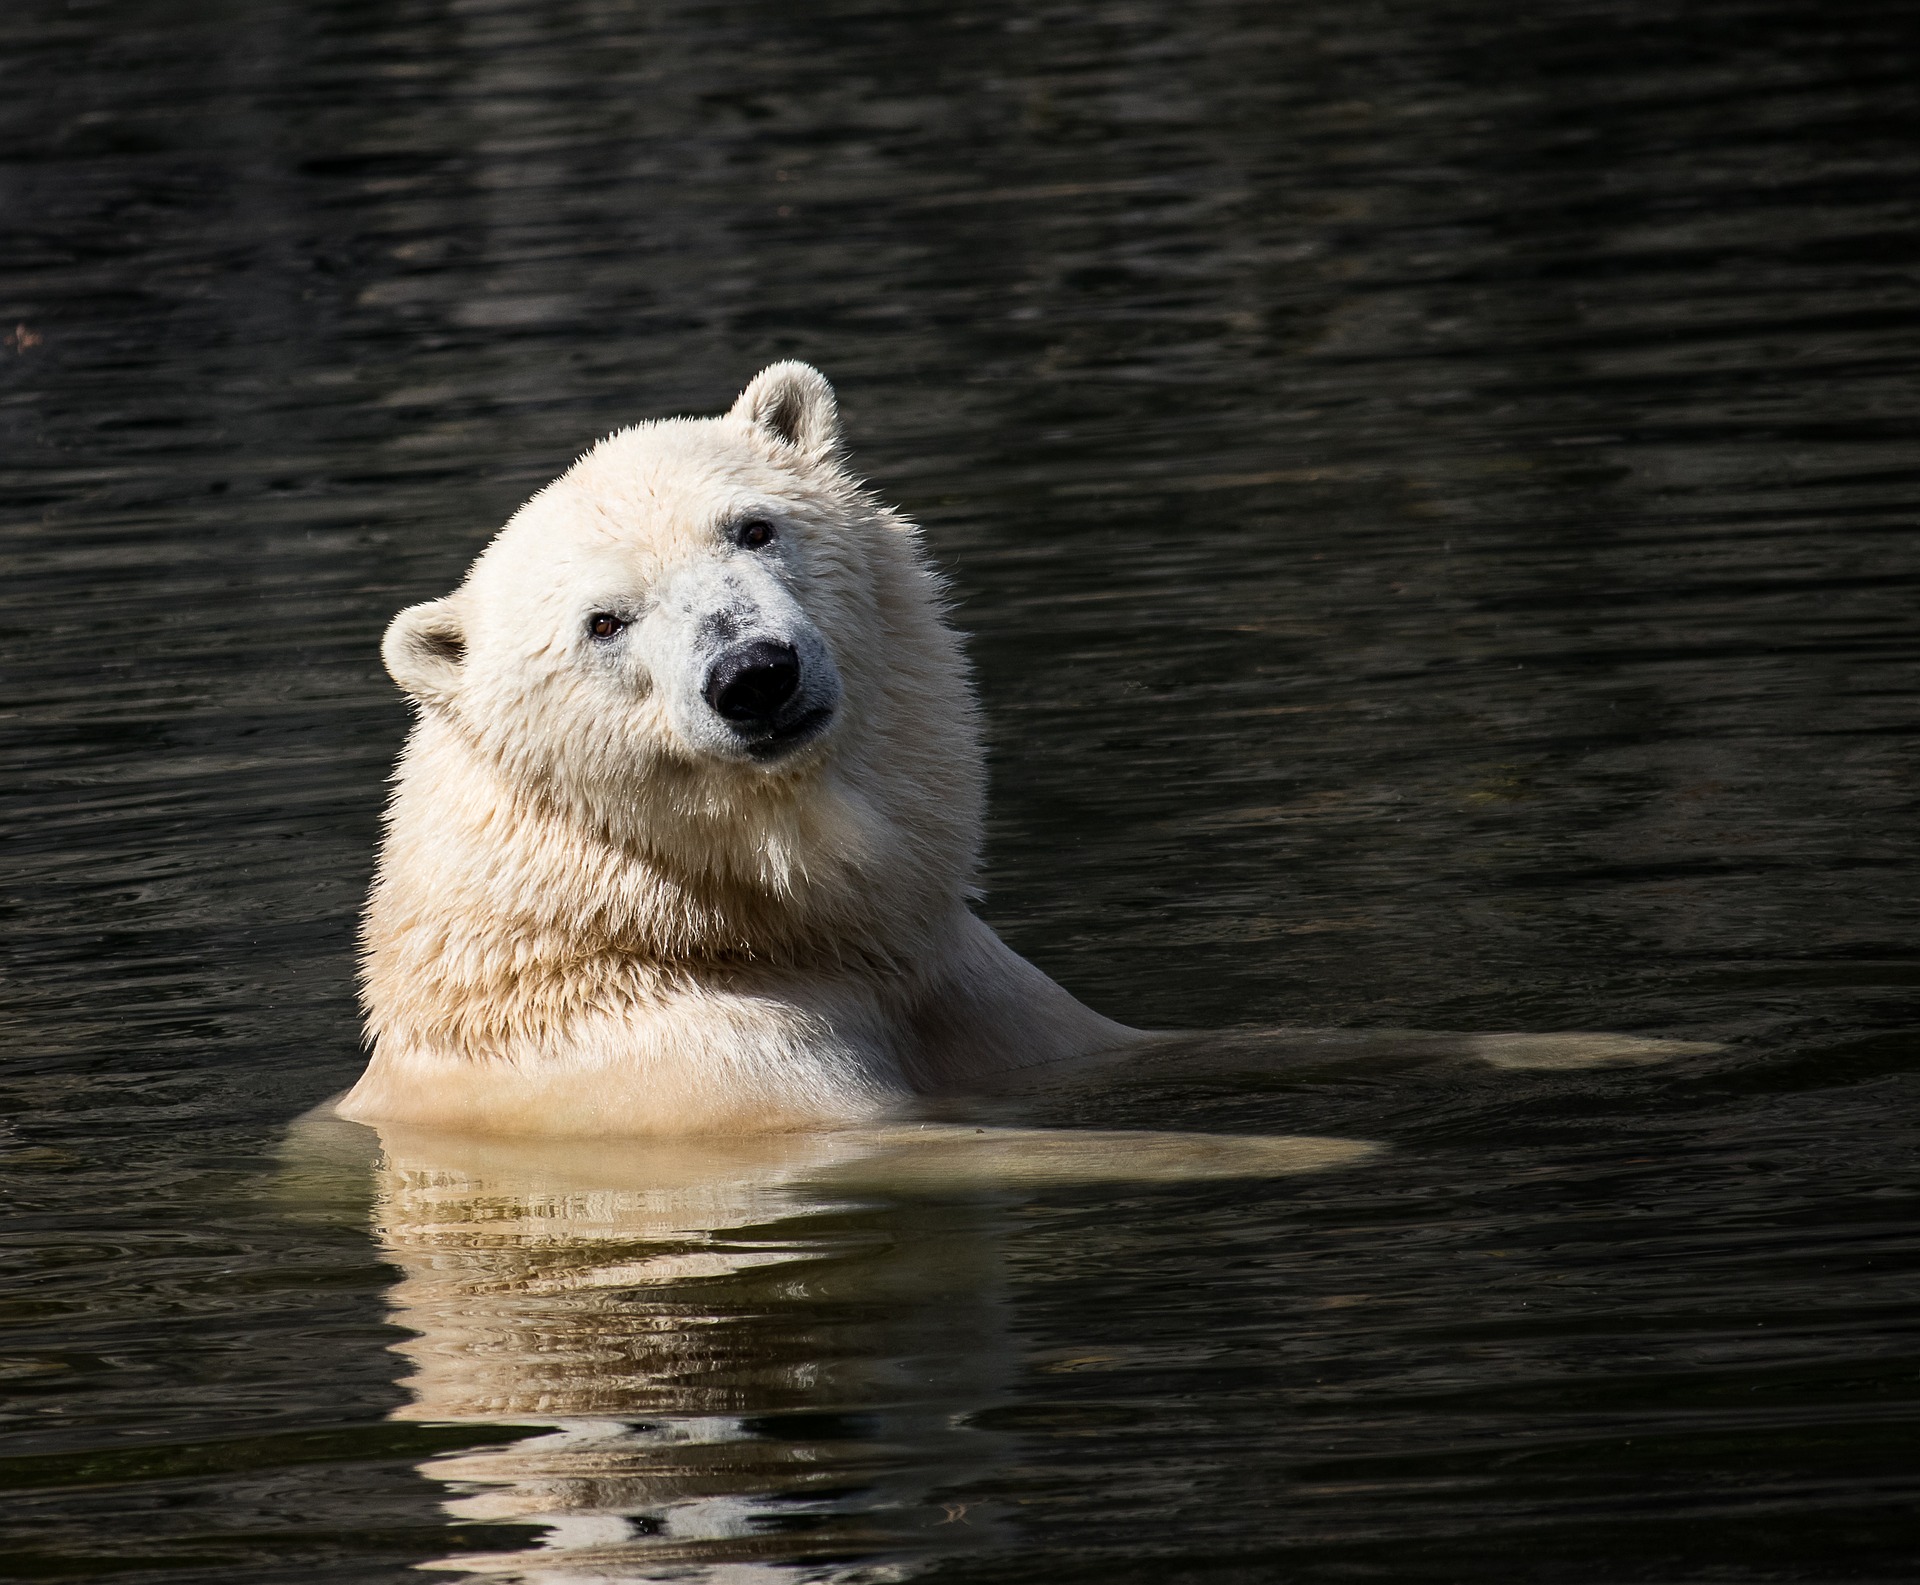 АРКТИКА СЕГОДНЯ: северный бизнес, арктическая наука и медвежье нашествие